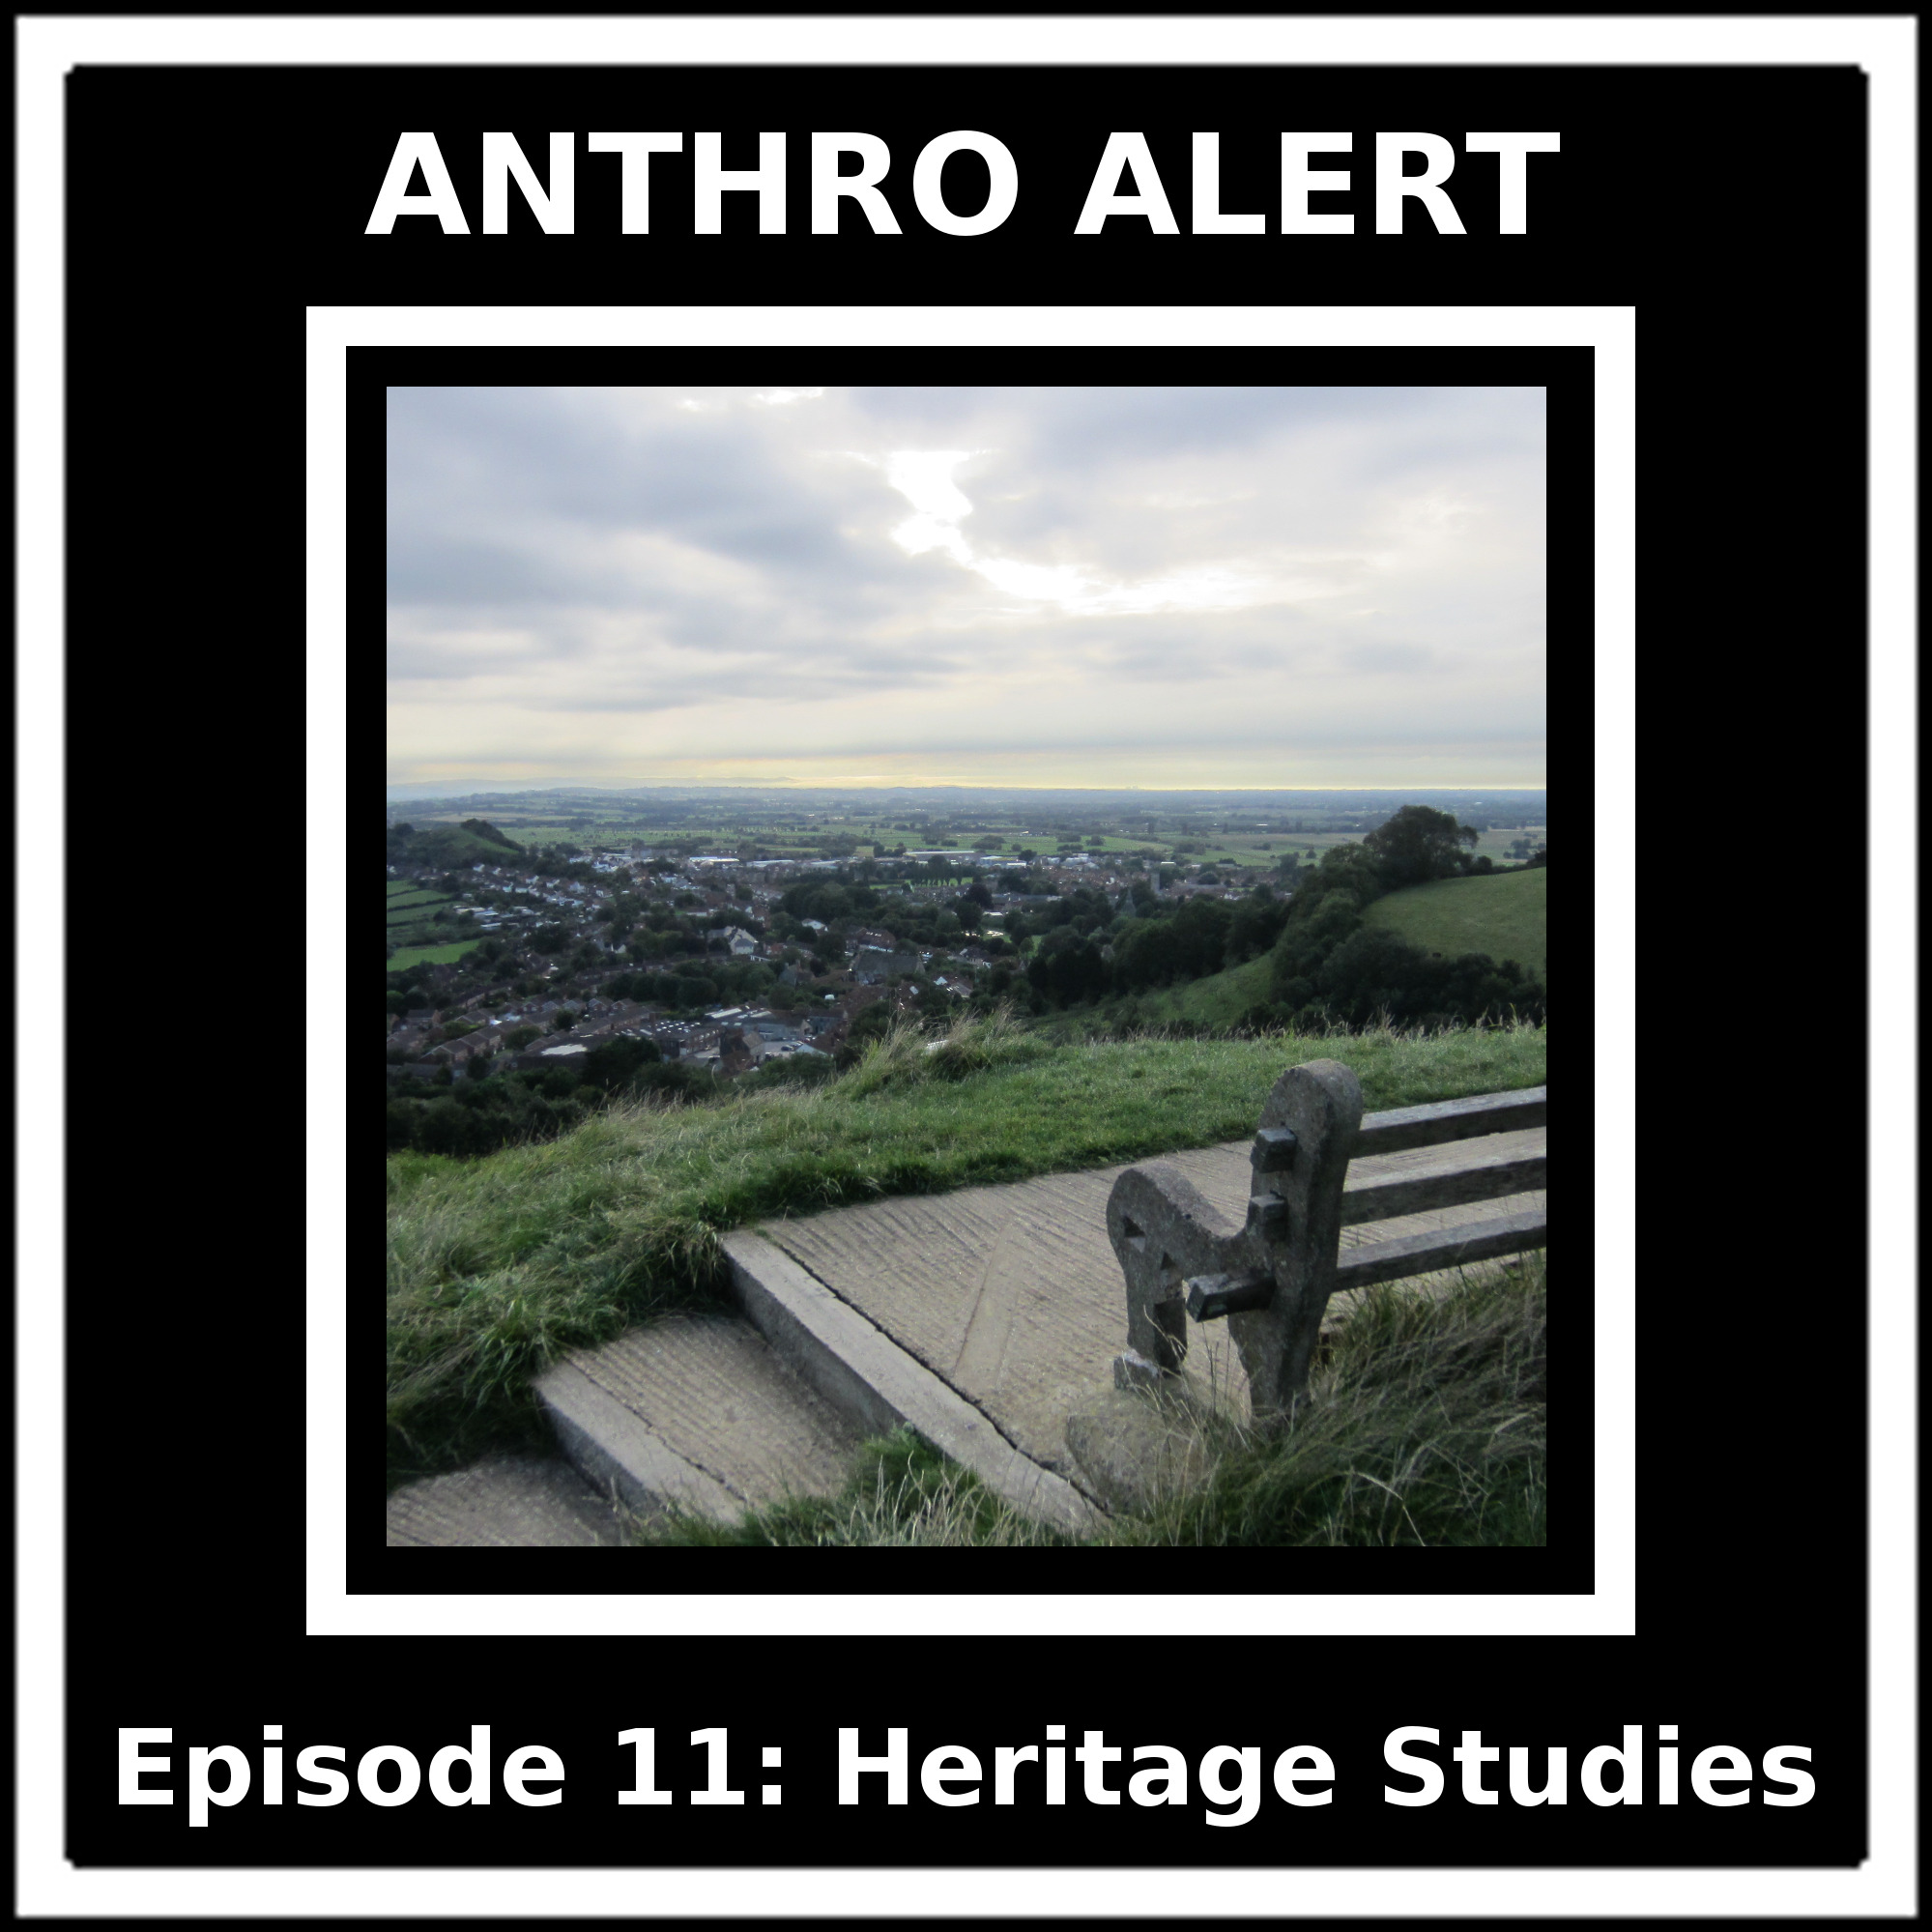 Episode 11: Heritage Studies